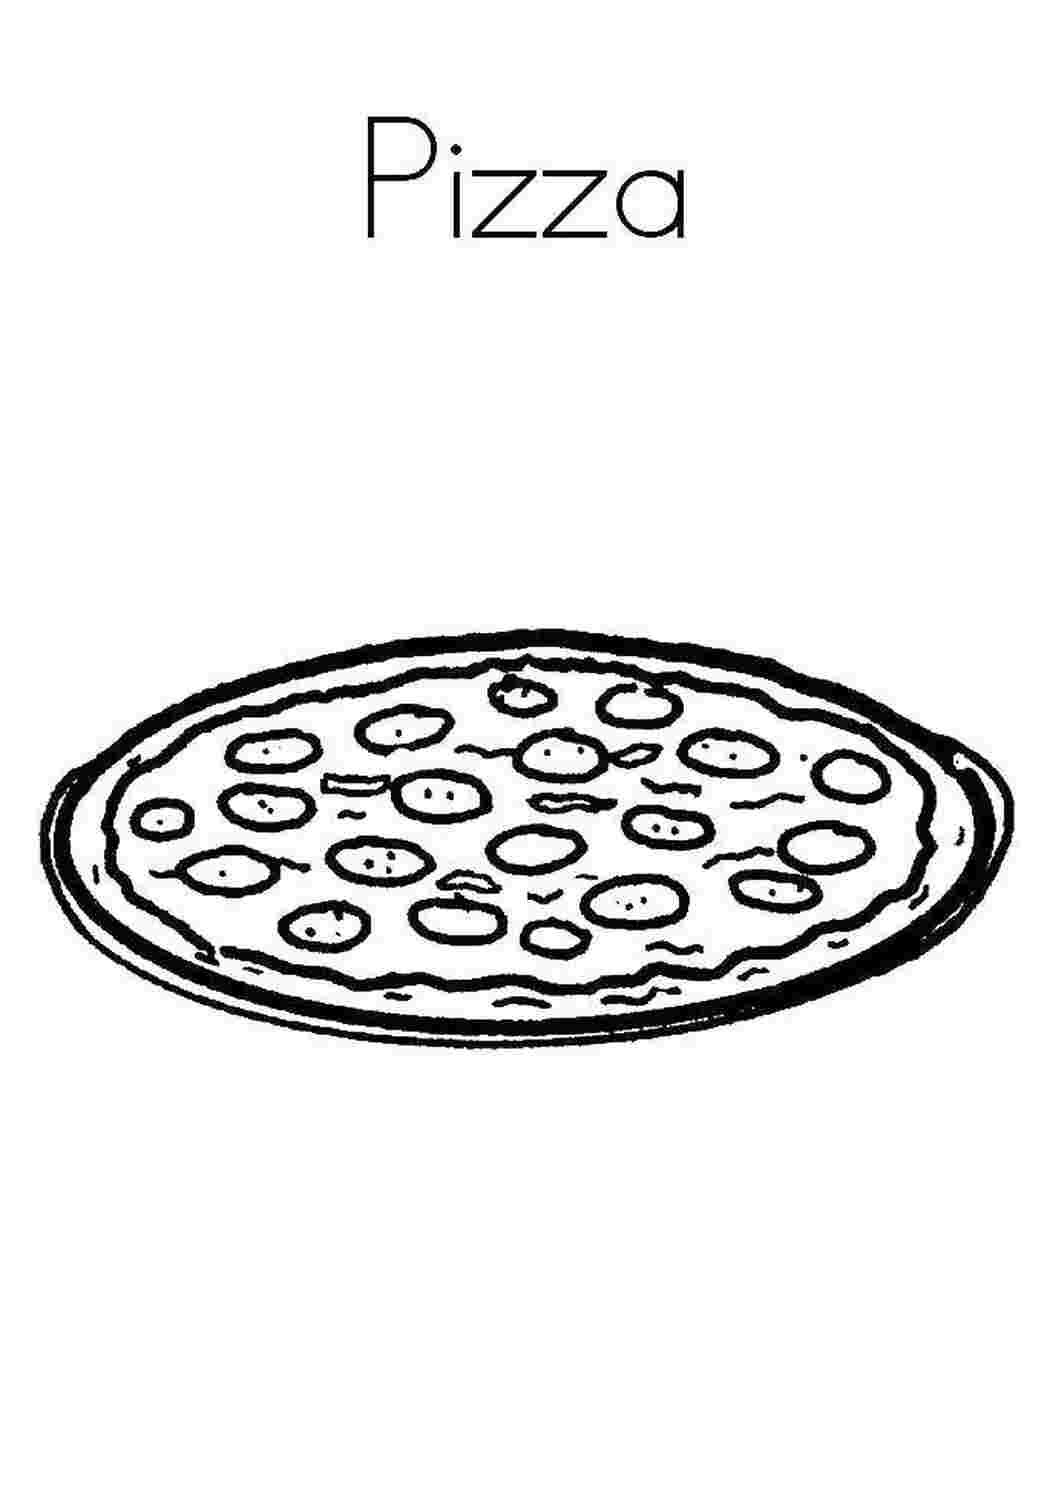 пицца пепперони раскраска фото 109